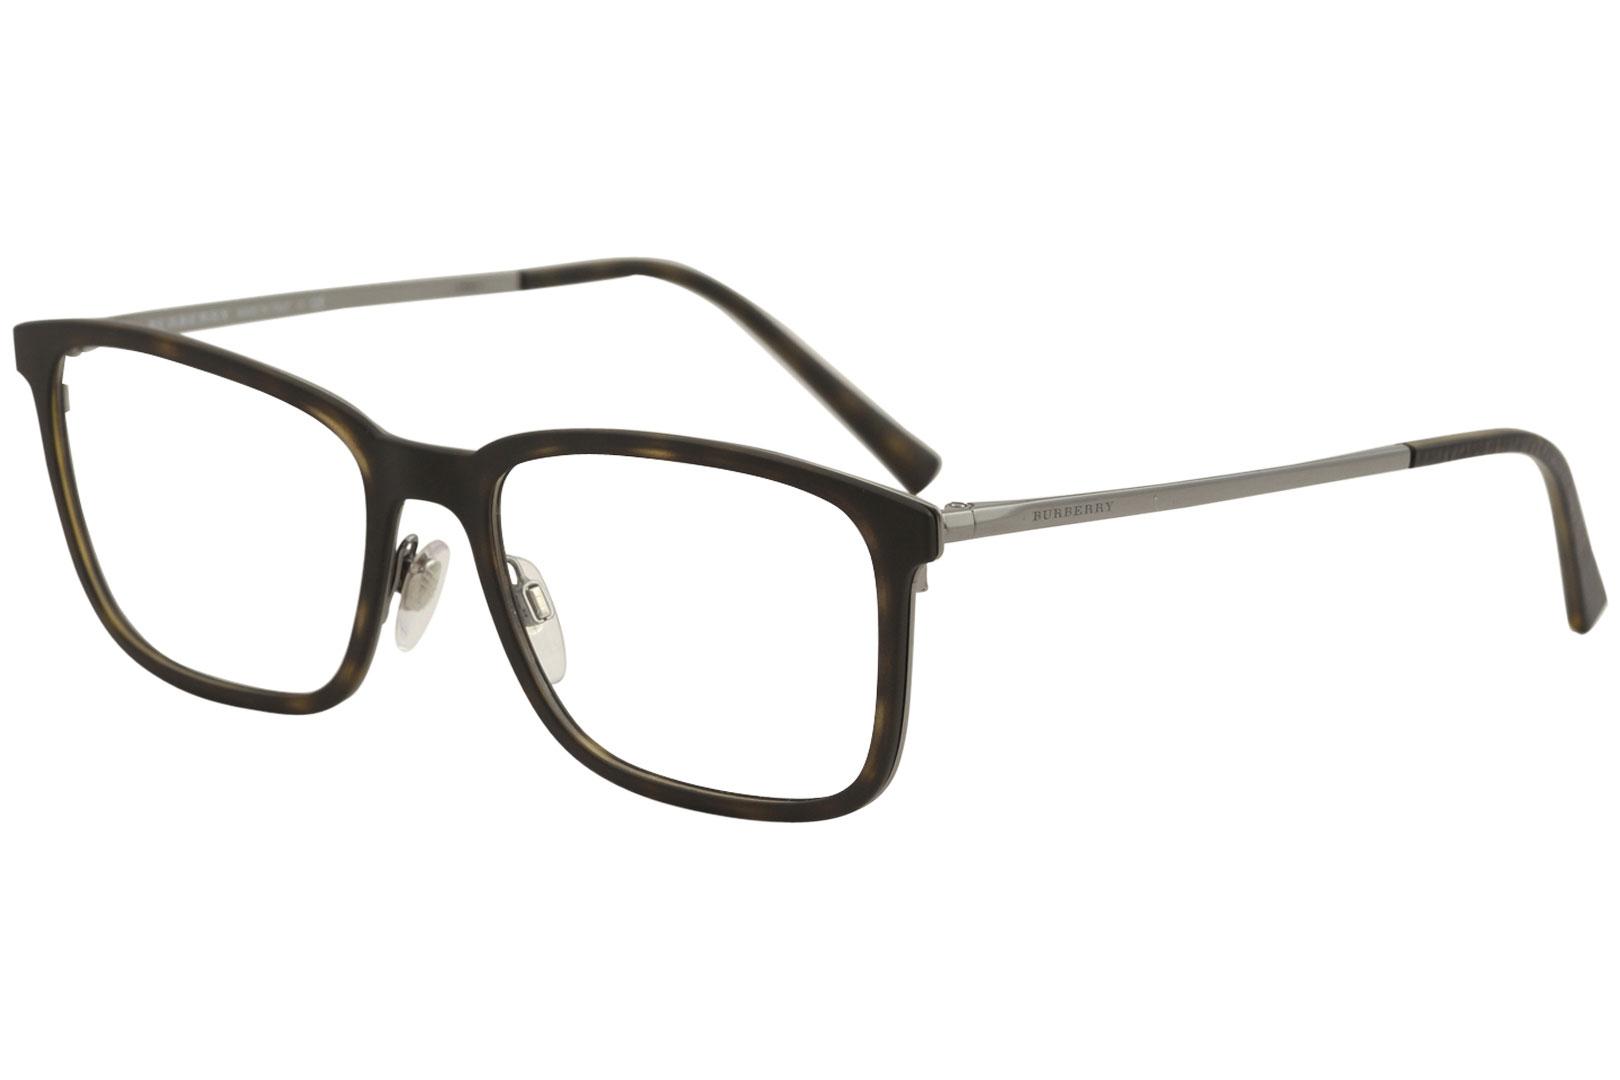 Burberry Men's Eyeglasses BE1315 B/1315 Full Rim Optical Frame - Matte Dark Havana   1008 - Lens 54 Bridge 17 Temple 145mm